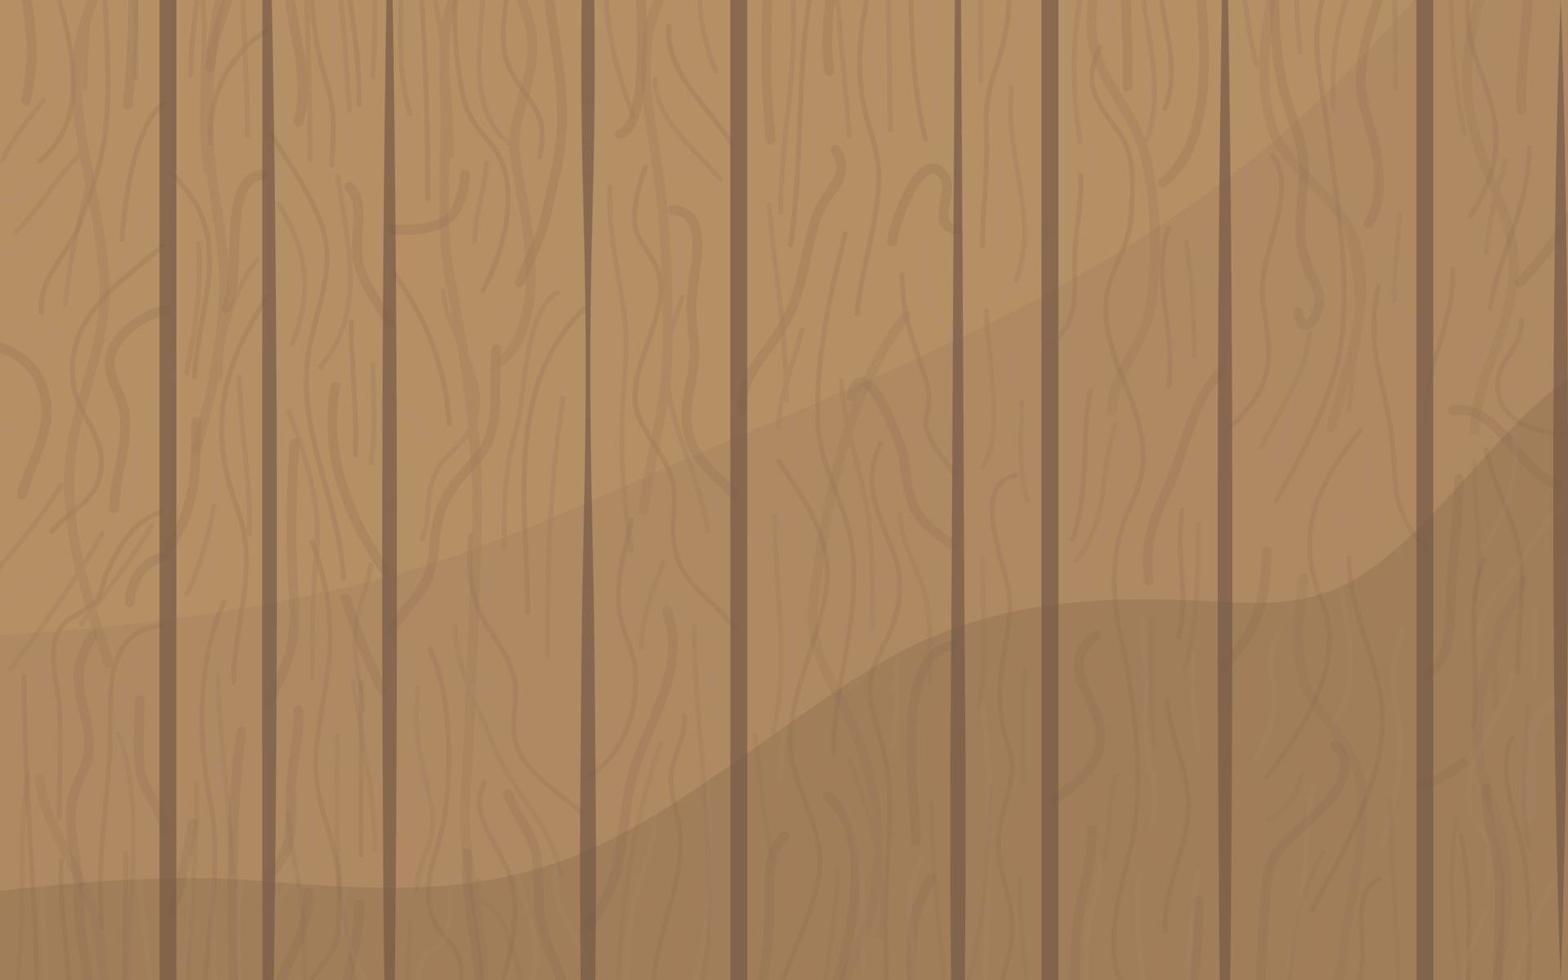 teckning tecknad serie konst av ljus brun trä textur mönster landskap bred mall vektor bakgrund